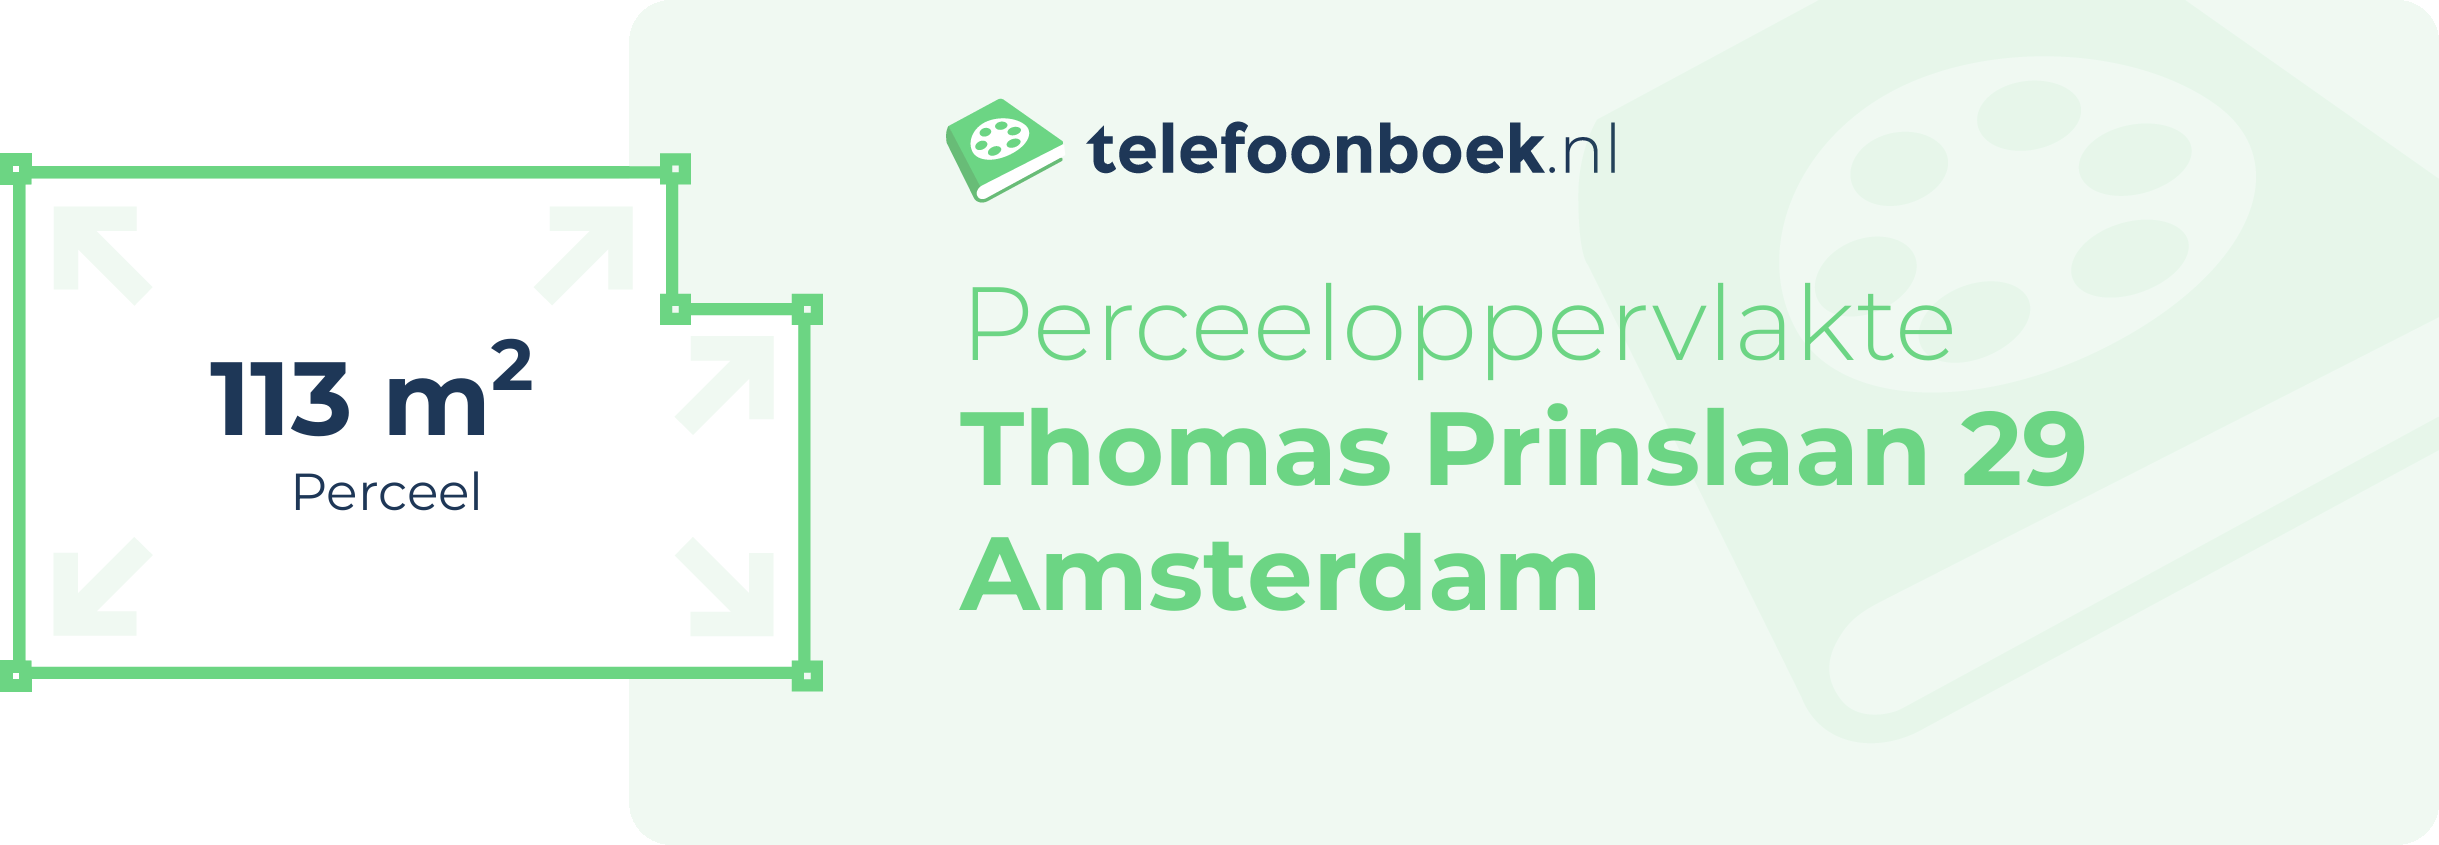 Perceeloppervlakte Thomas Prinslaan 29 Amsterdam